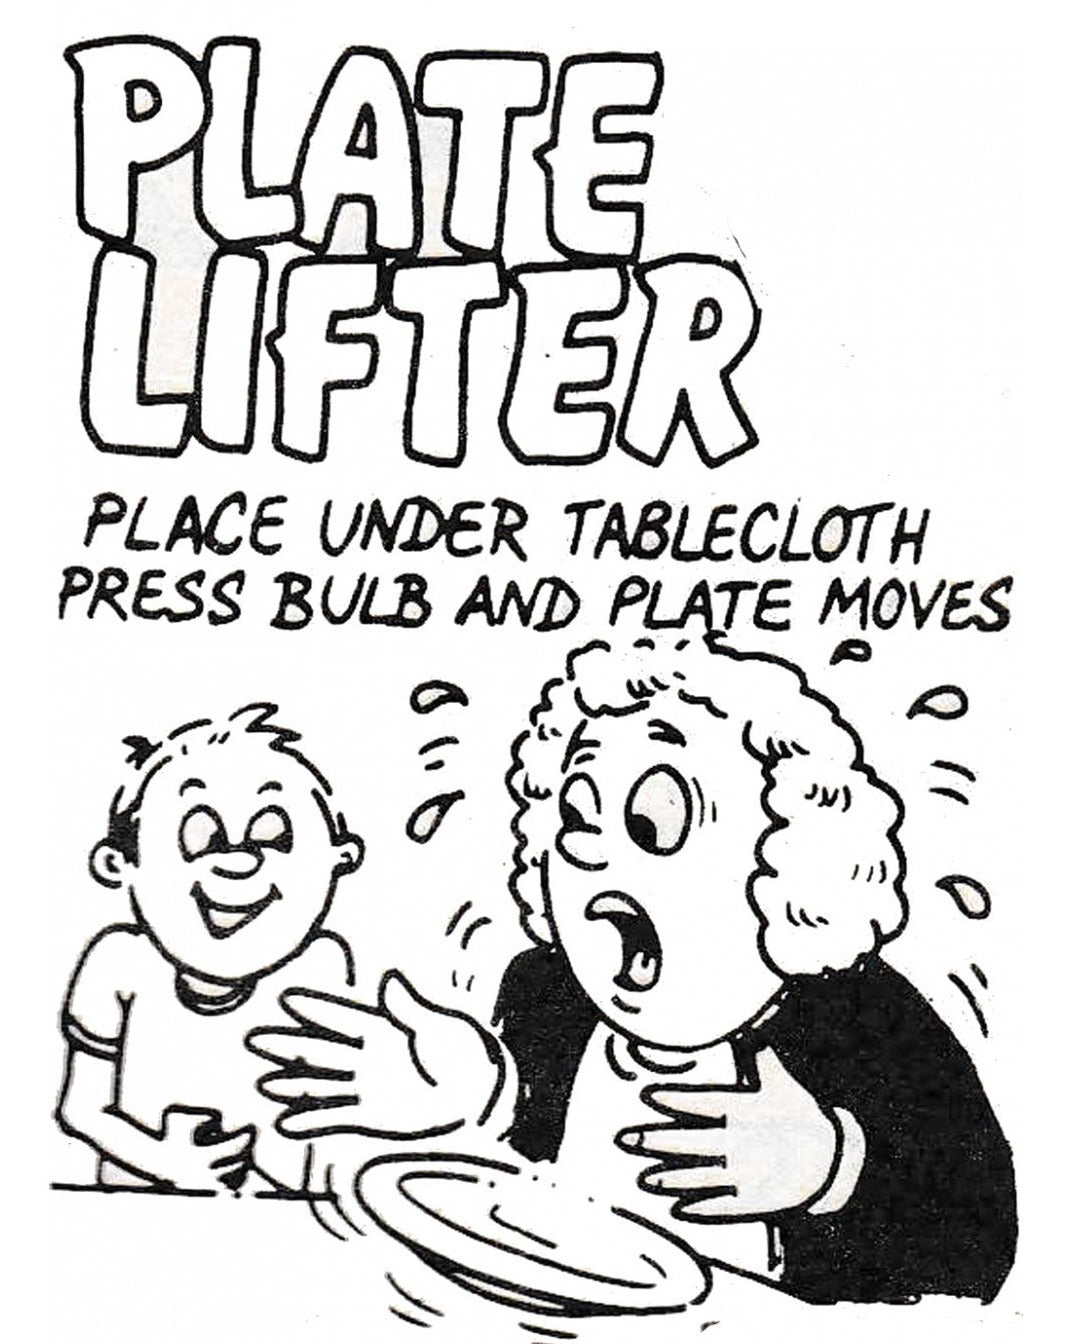 Plate Lifter